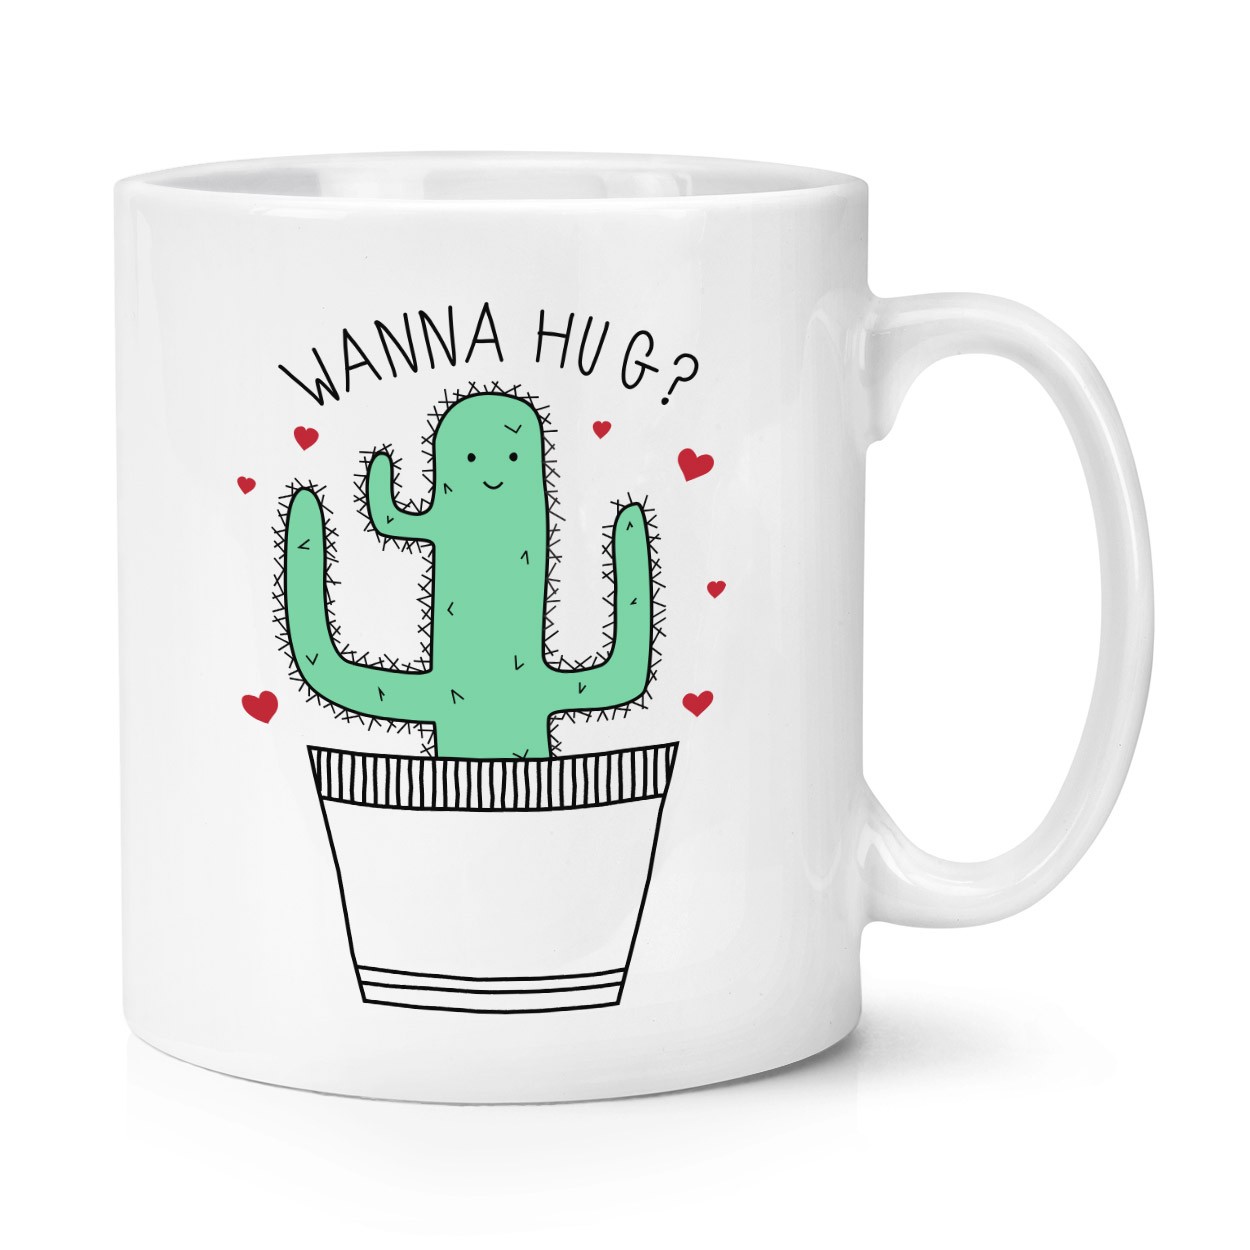 Cactus Wanna Hug 10oz Mug Cup